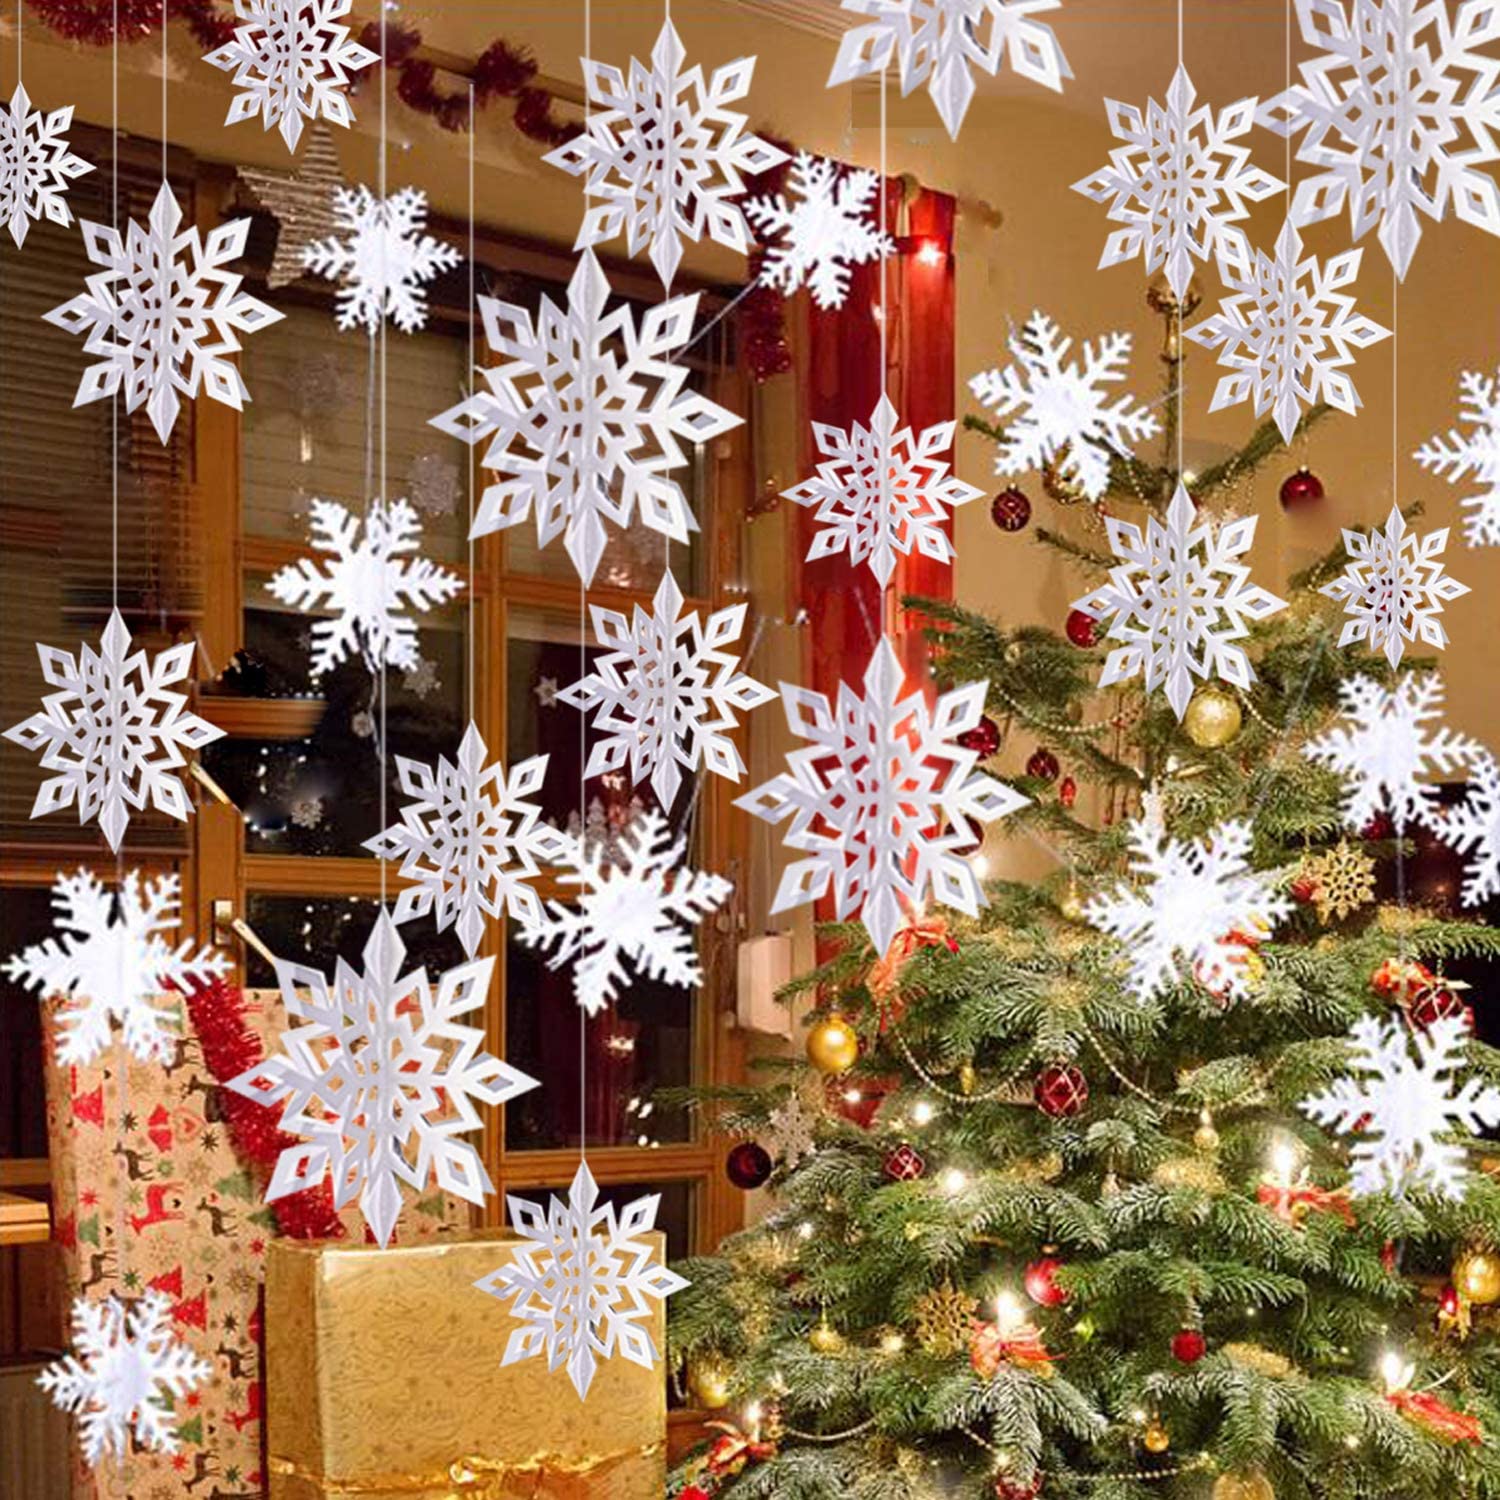 Amazon-christmas-decor-paper-snowflakes.